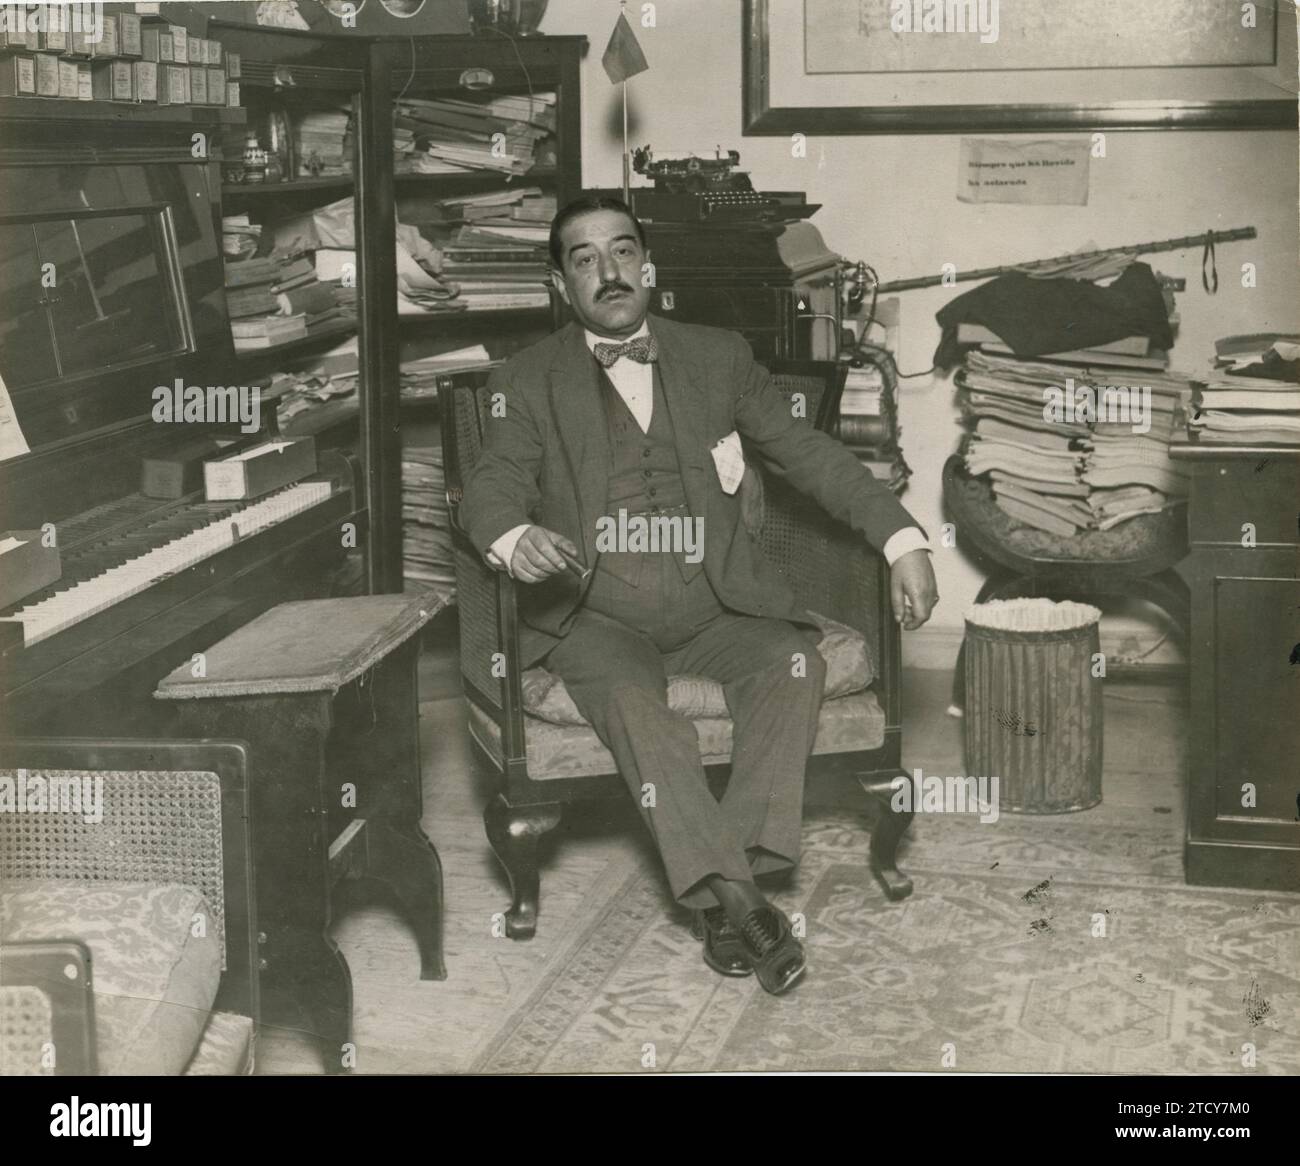 Madrid, vers 1910. L'écrivain, dramaturge, journaliste et homme d'affaires José Juan cadenas dans son bureau. Crédit : Album / Archivo ABC Banque D'Images